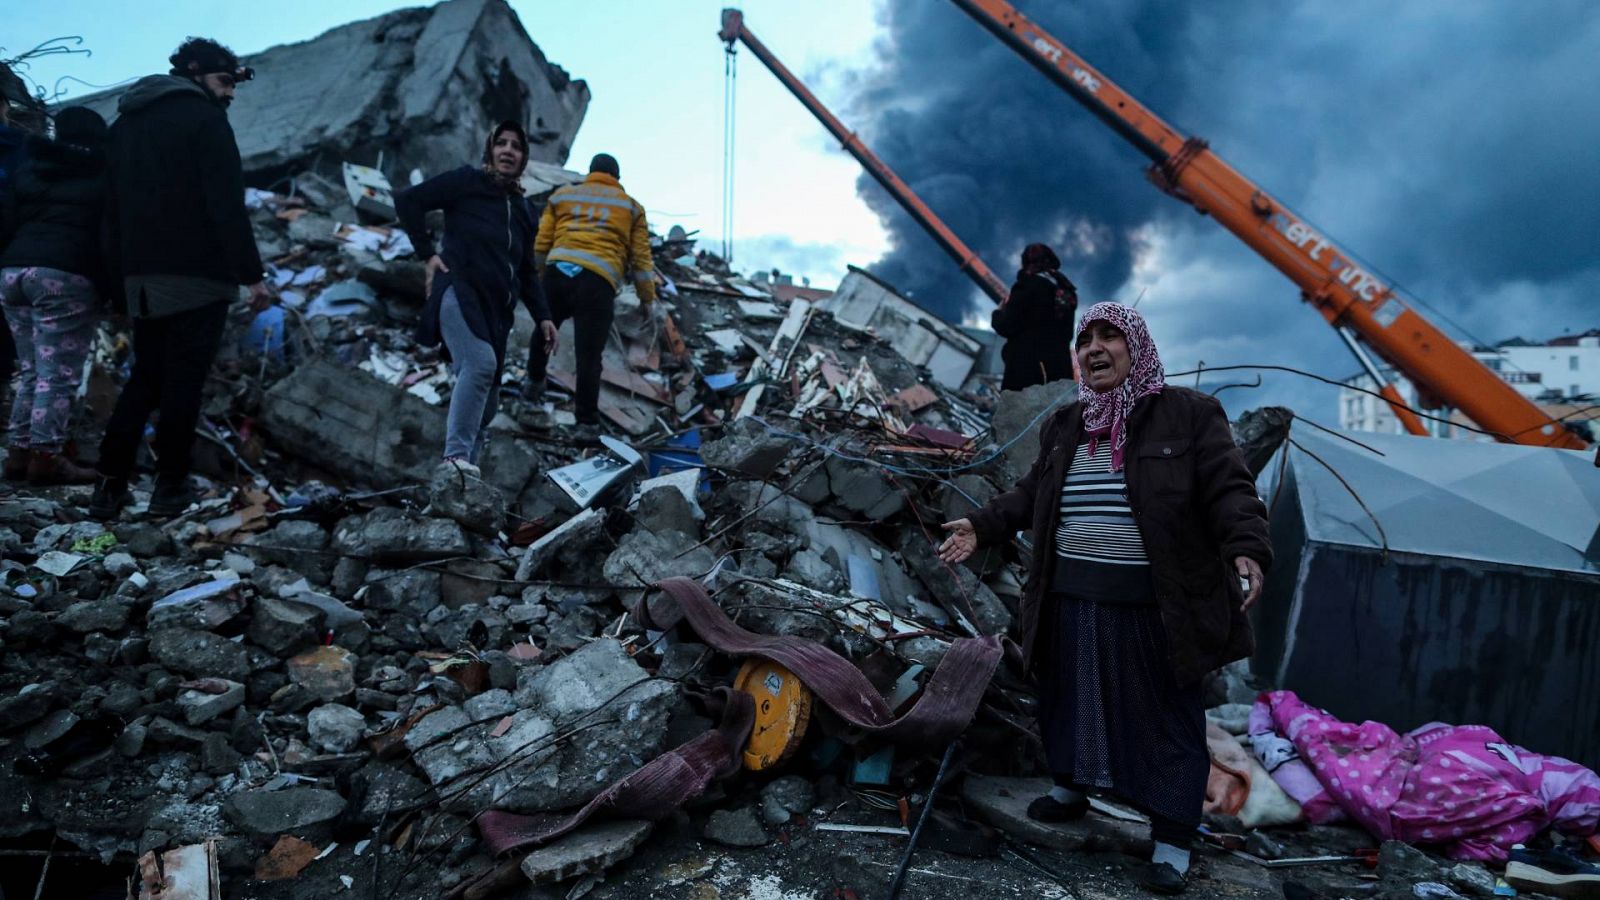 Angustia en los rescates tras el terremoto en Turquía: "Llaman, piden que les salvemos, pero no podemos"   - Ver ahora